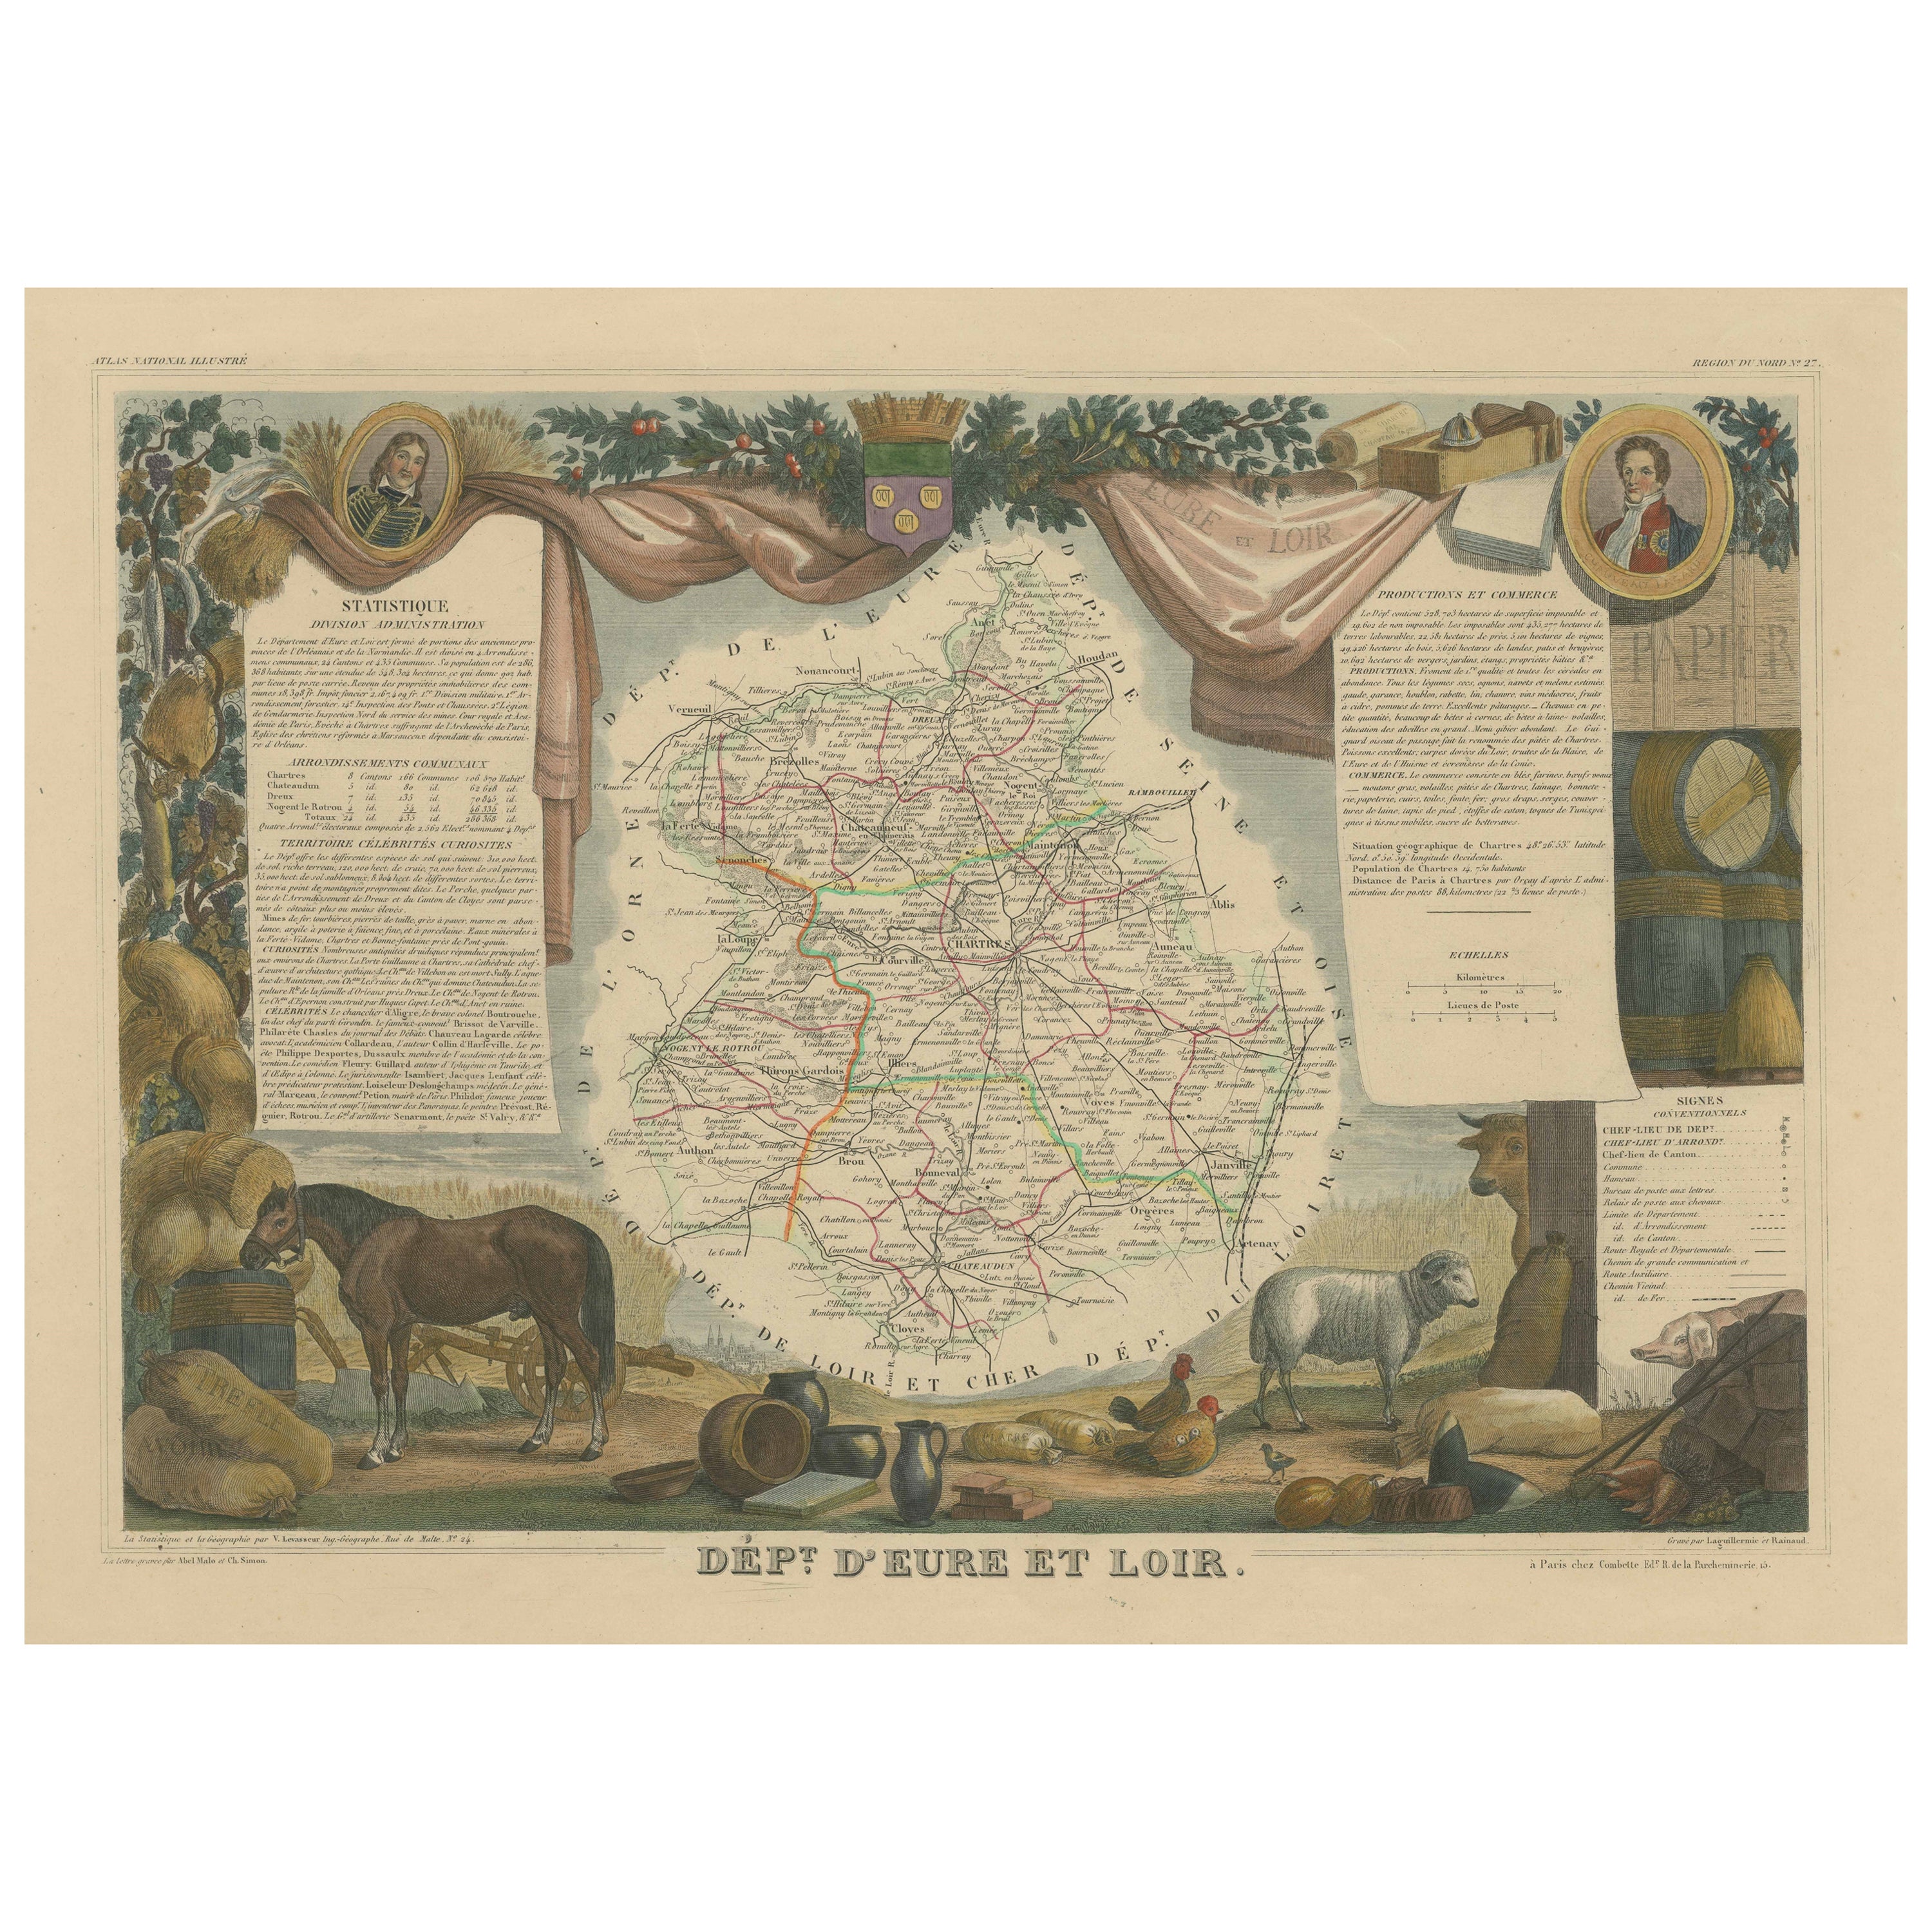 Handkolorierte antike Karte des Departements Eure-et-loir, Frankreich